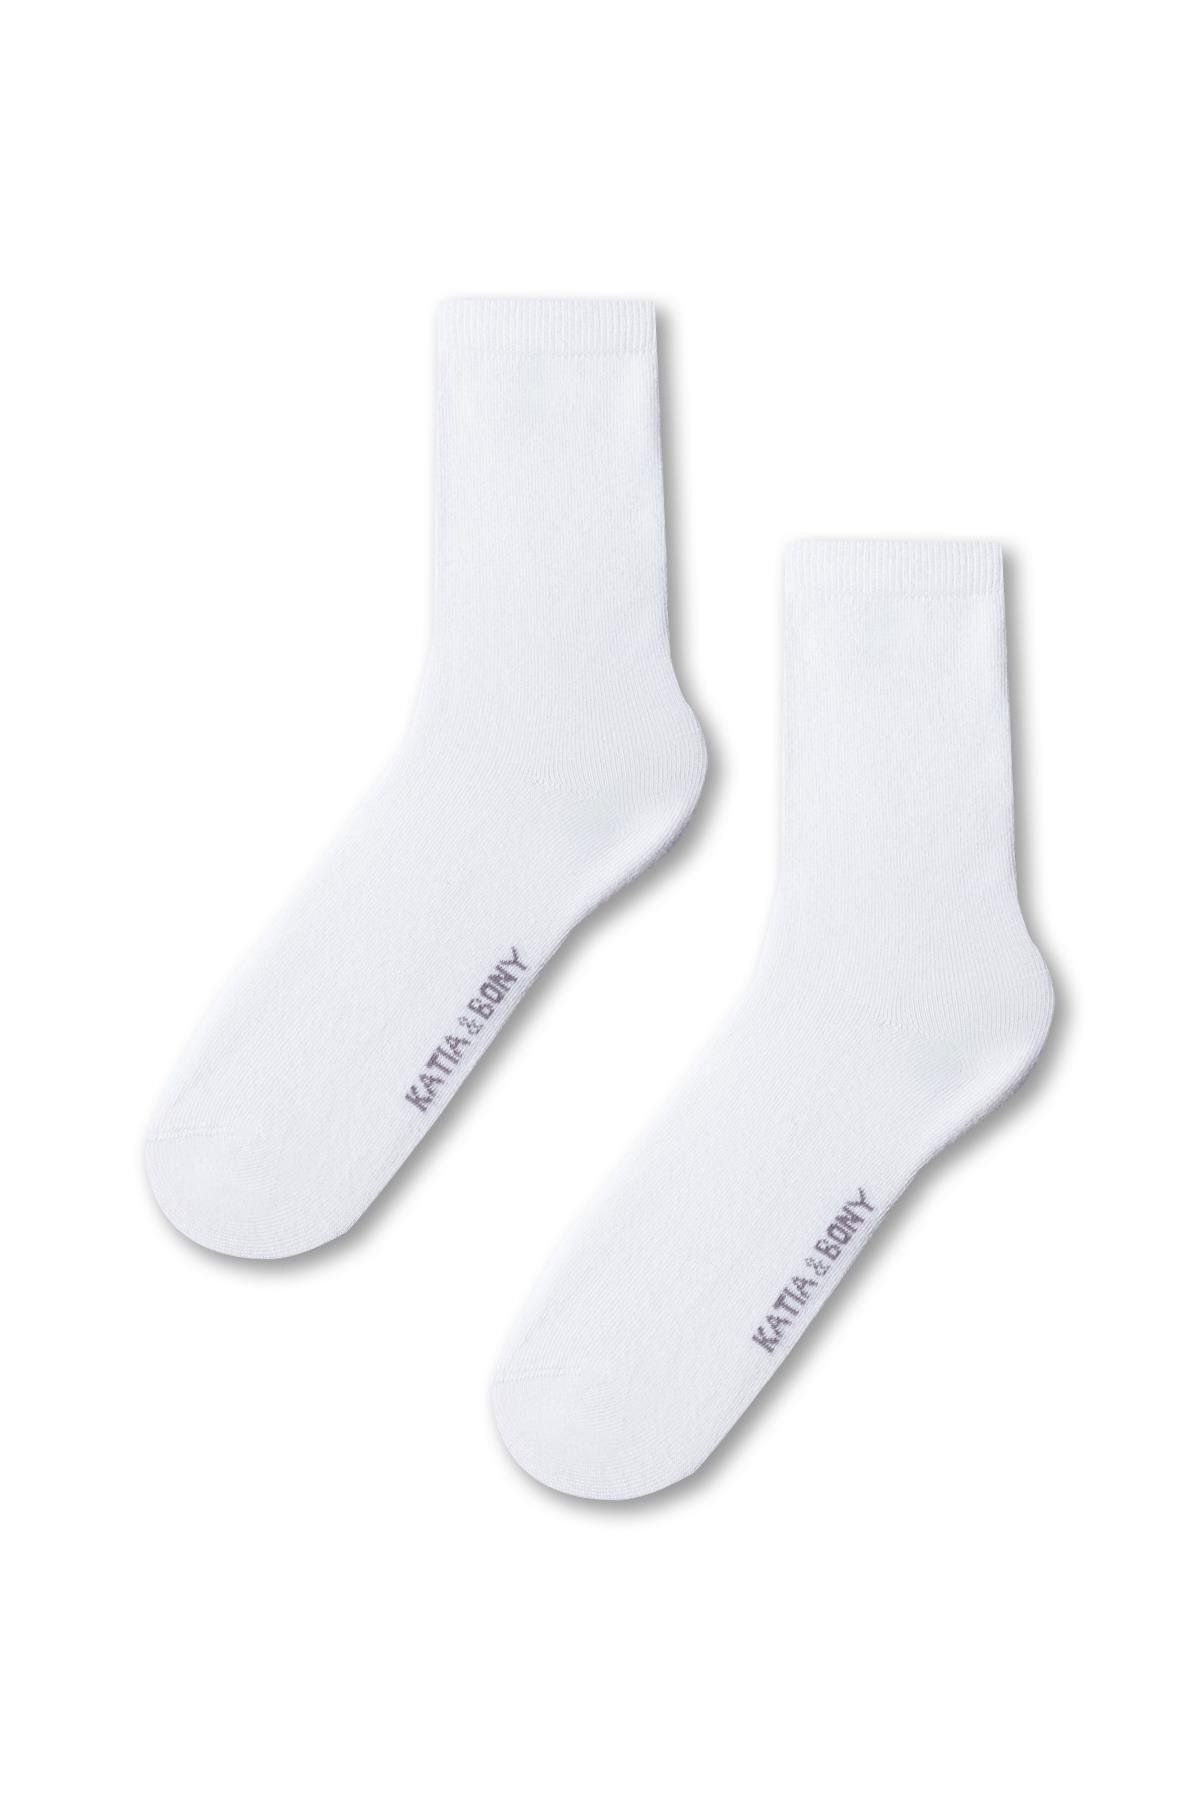 Katia & Bony Kadın Family Basic Soket Çorap Ekru